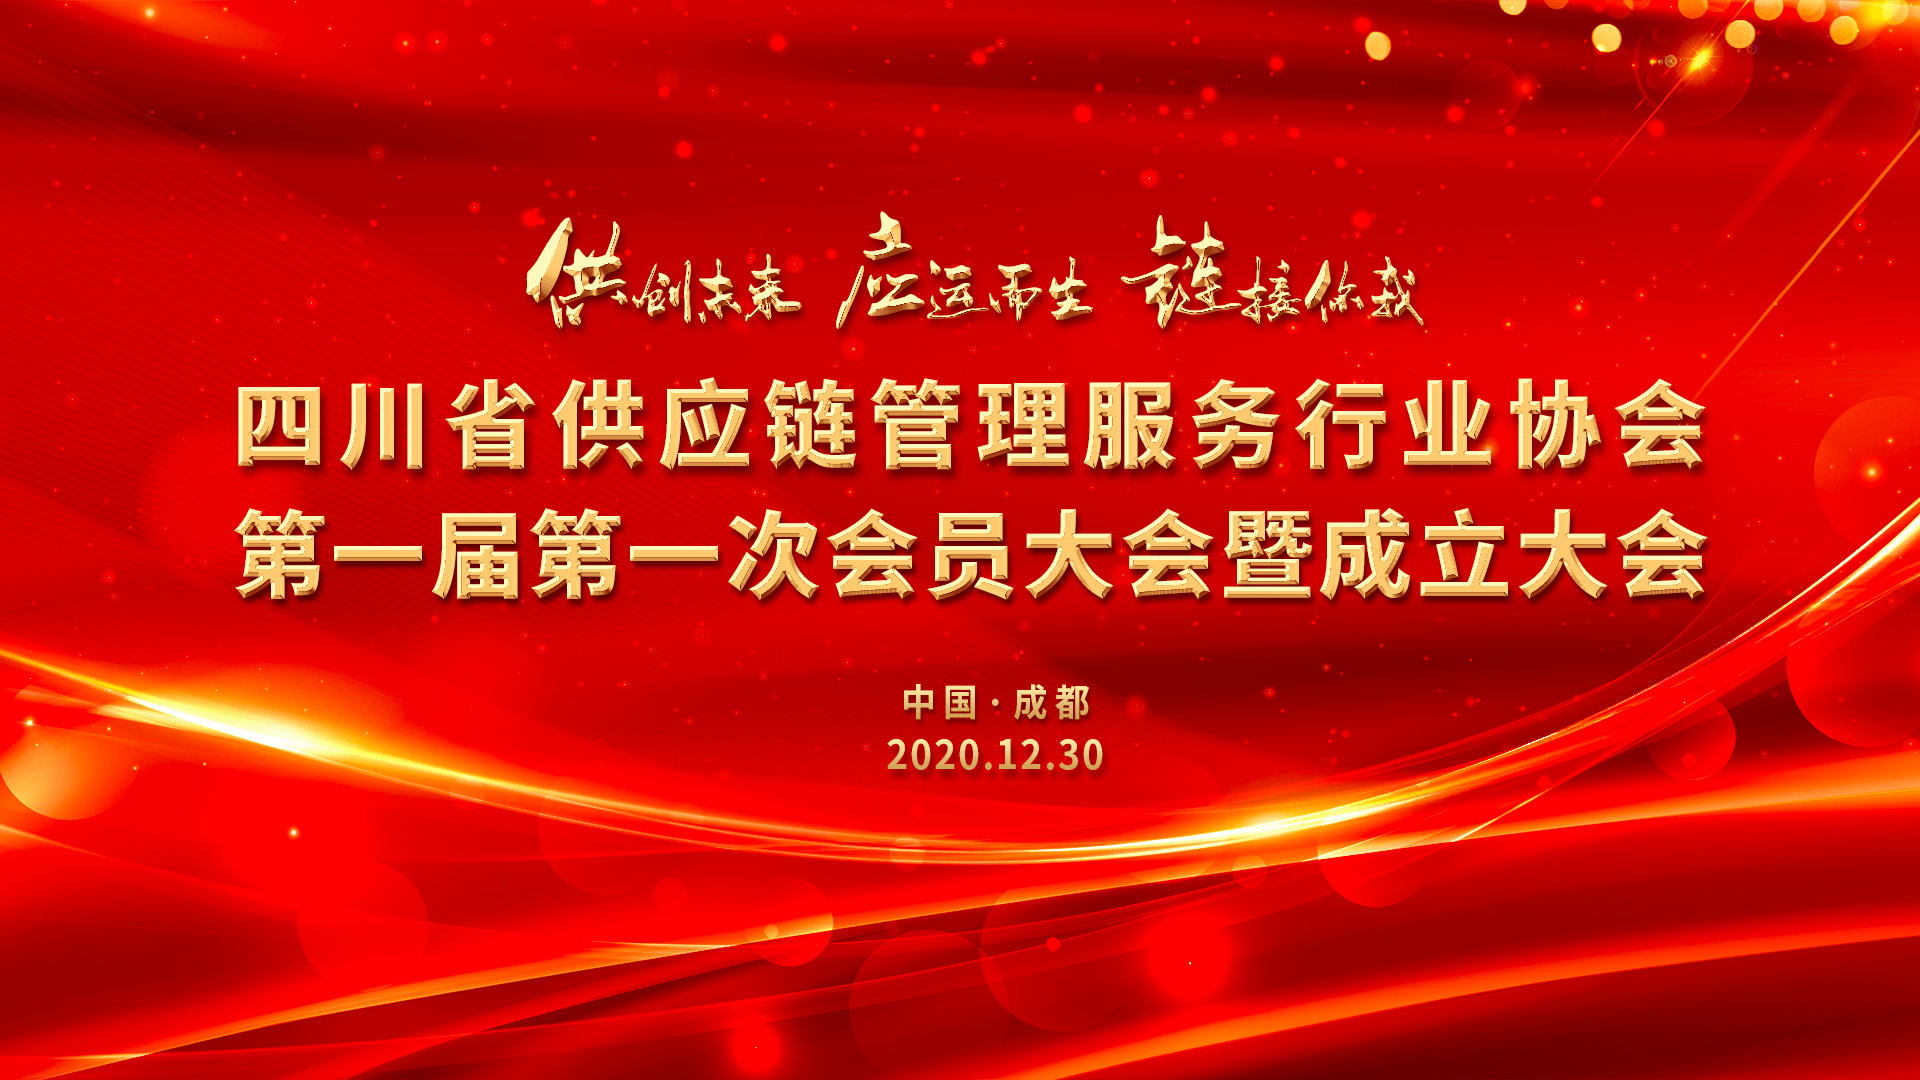 
四川省供应链治理服务行业协会正式建立：太阳成集团tyc23